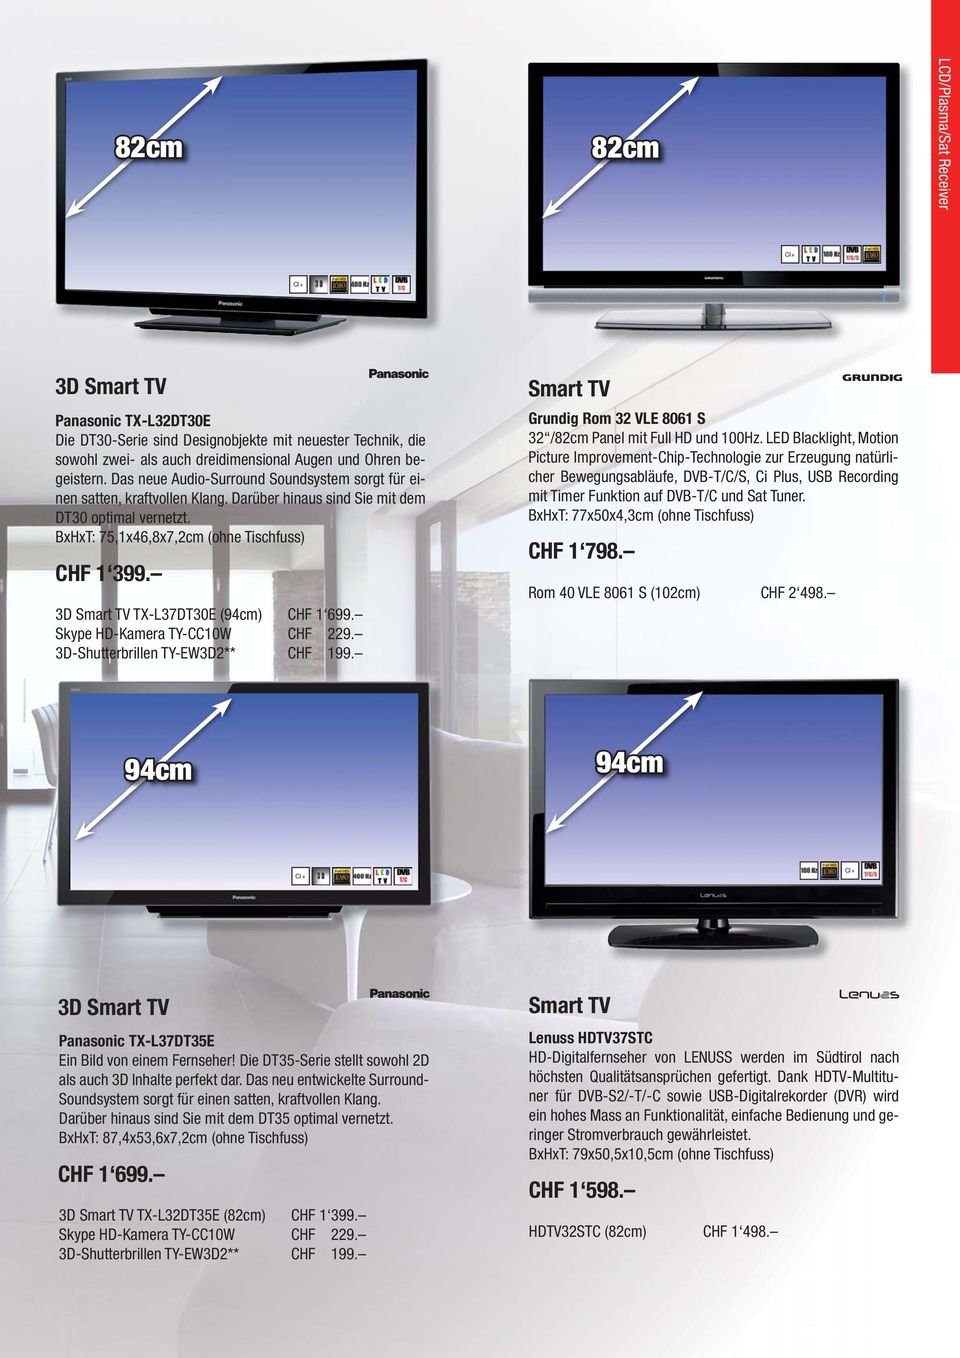 3D Smart TV TX-L37DT30E (94cm) CHF 1 699. Skype HD-Kamera TY-CC10W CHF 229. 3D-Shutterbrillen TY-EW3D2** CHF 199. Smart TV Grundig Rom 32 VLE 8061 S 32 /82cm Panel mit Full HD und 100Hz.